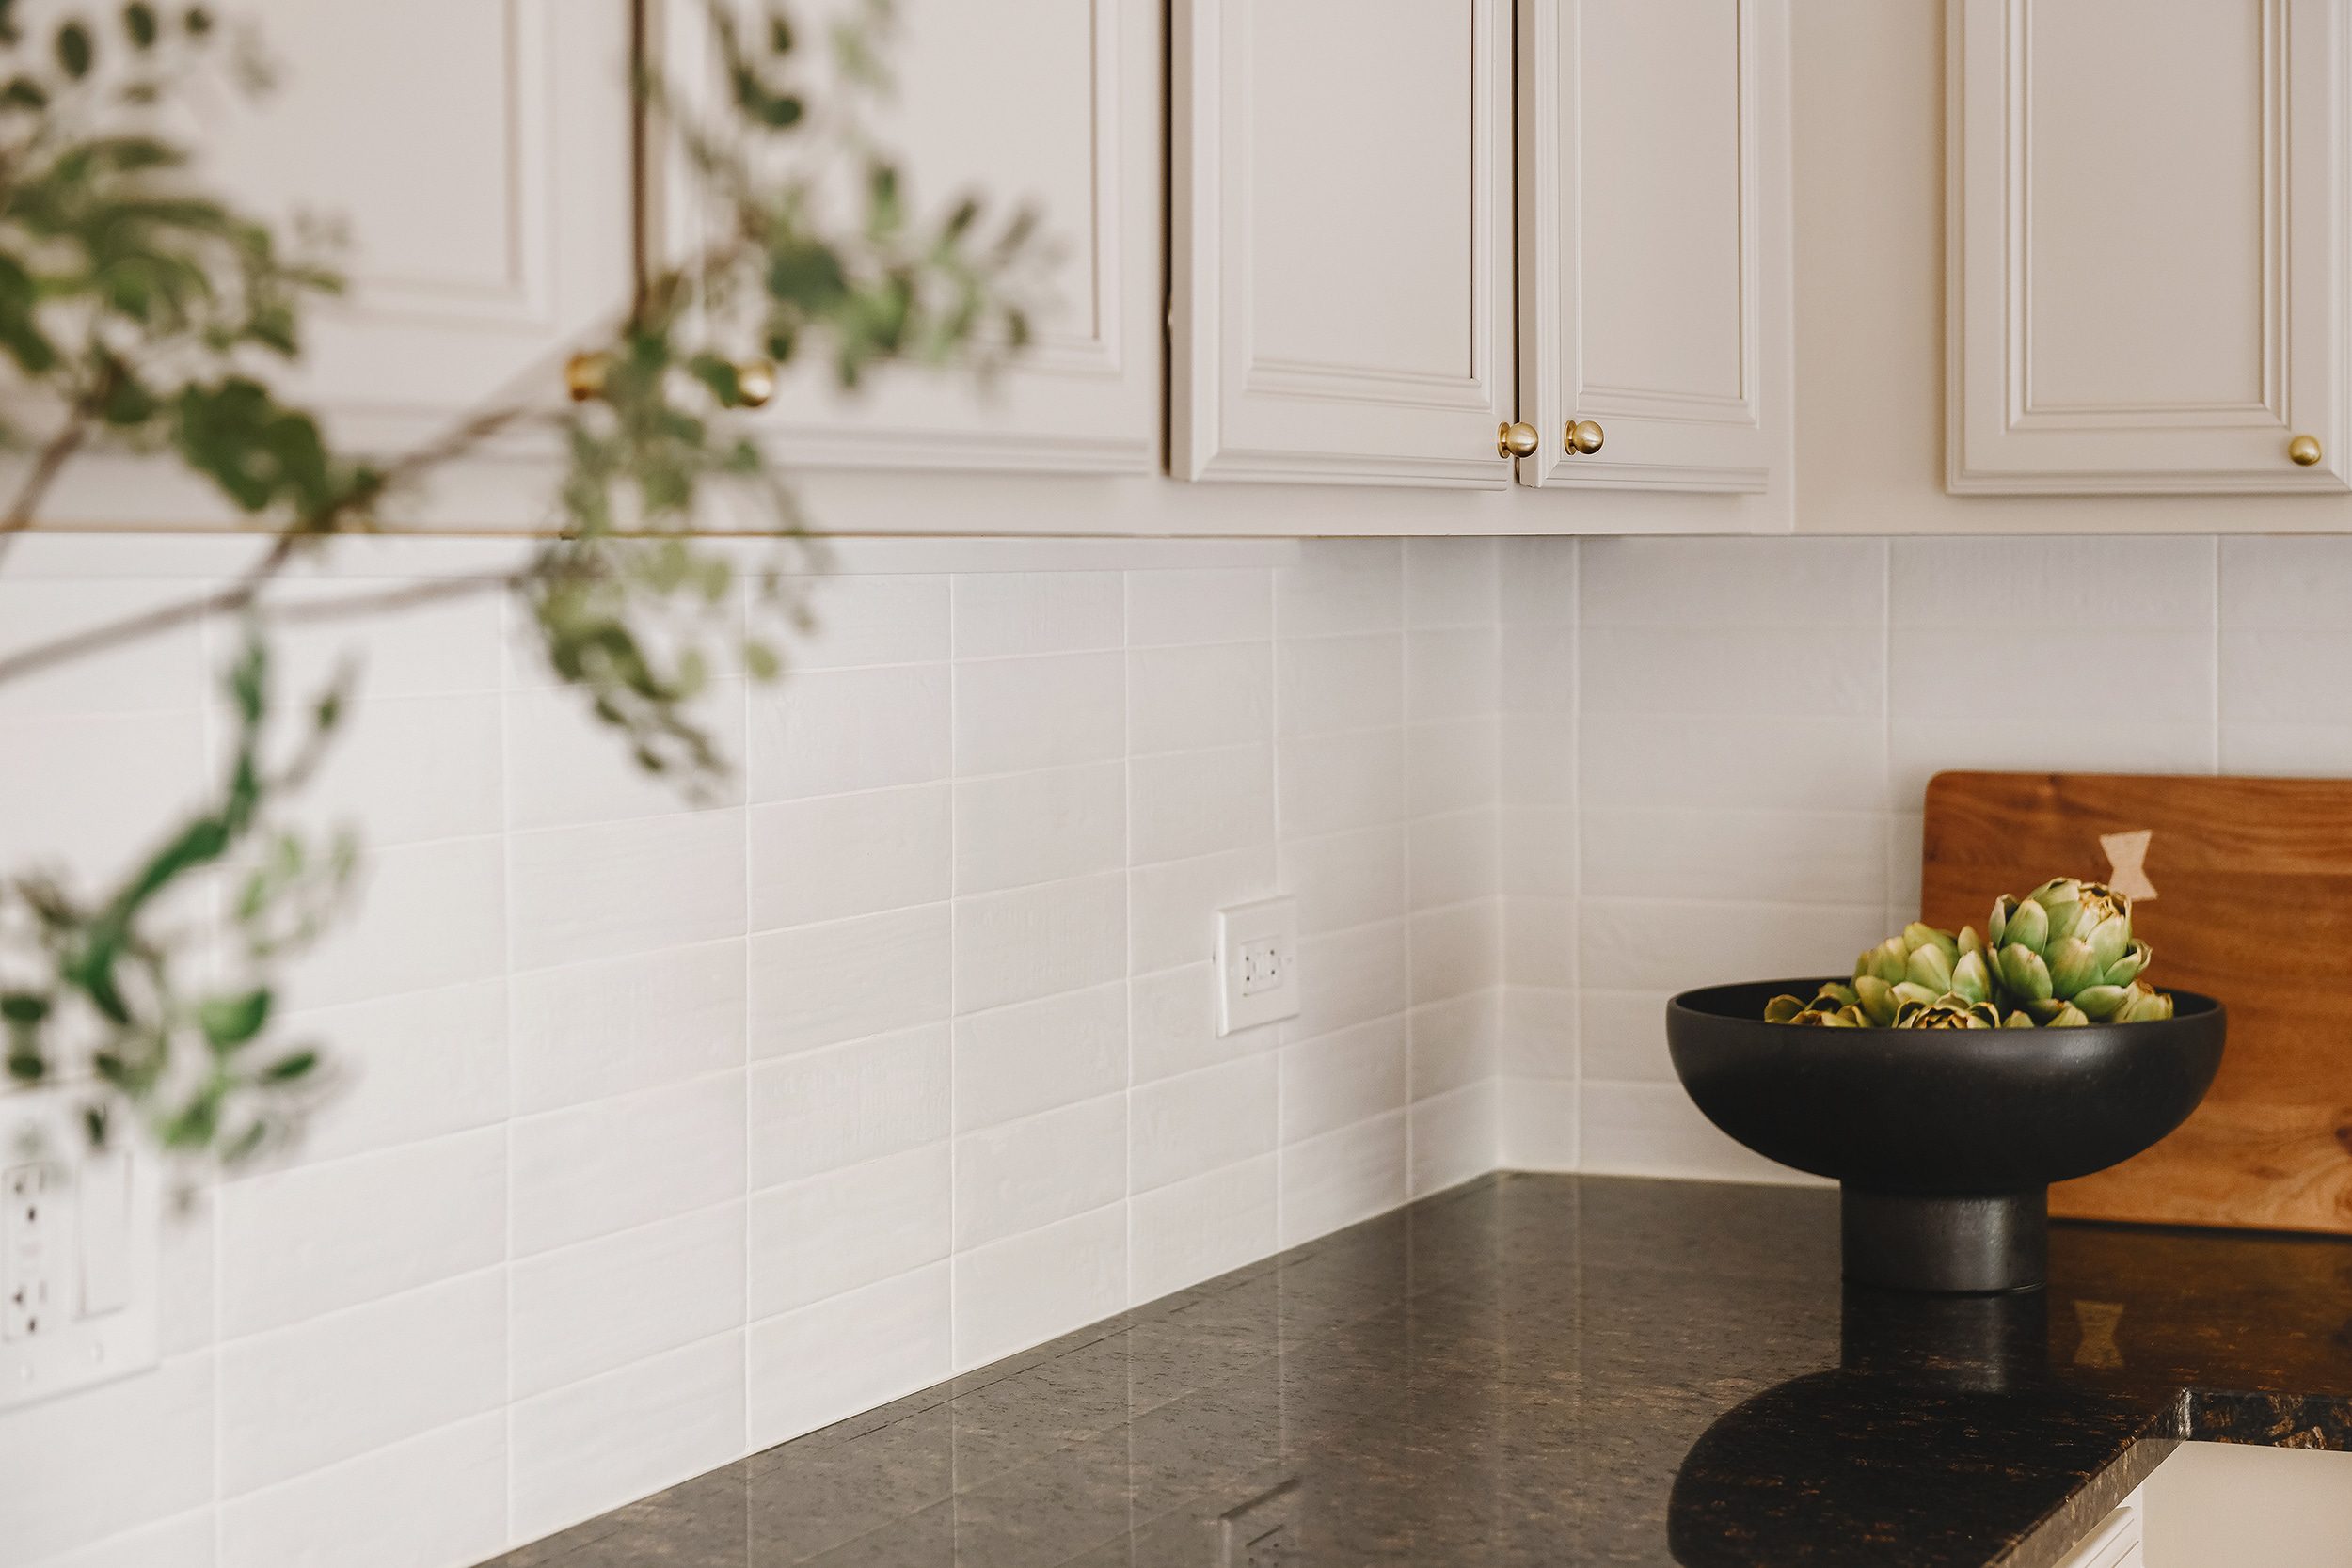 kitchen backsplash styled | via Yellow Brick Home